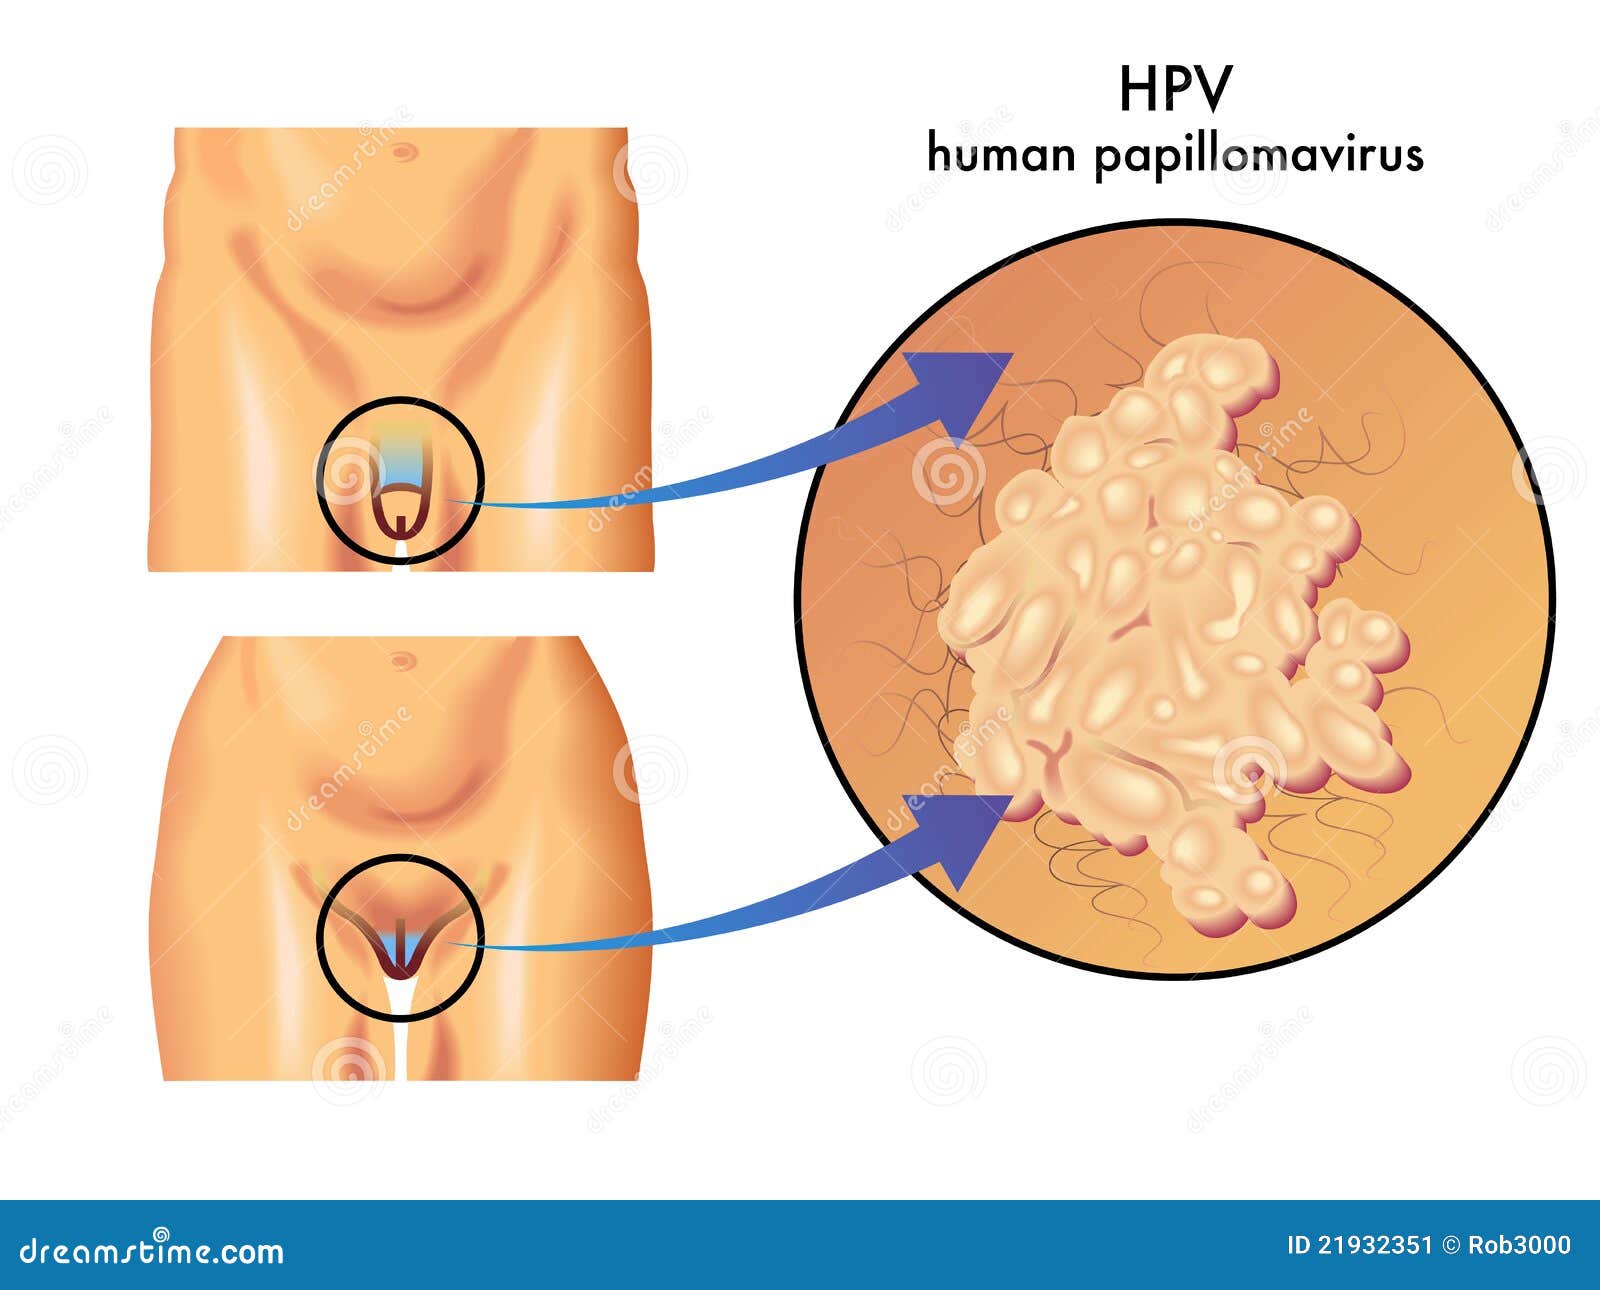 HPV leküzdése: táplálkozási, életmódbeli tanácsok - vedd fel a harcot!